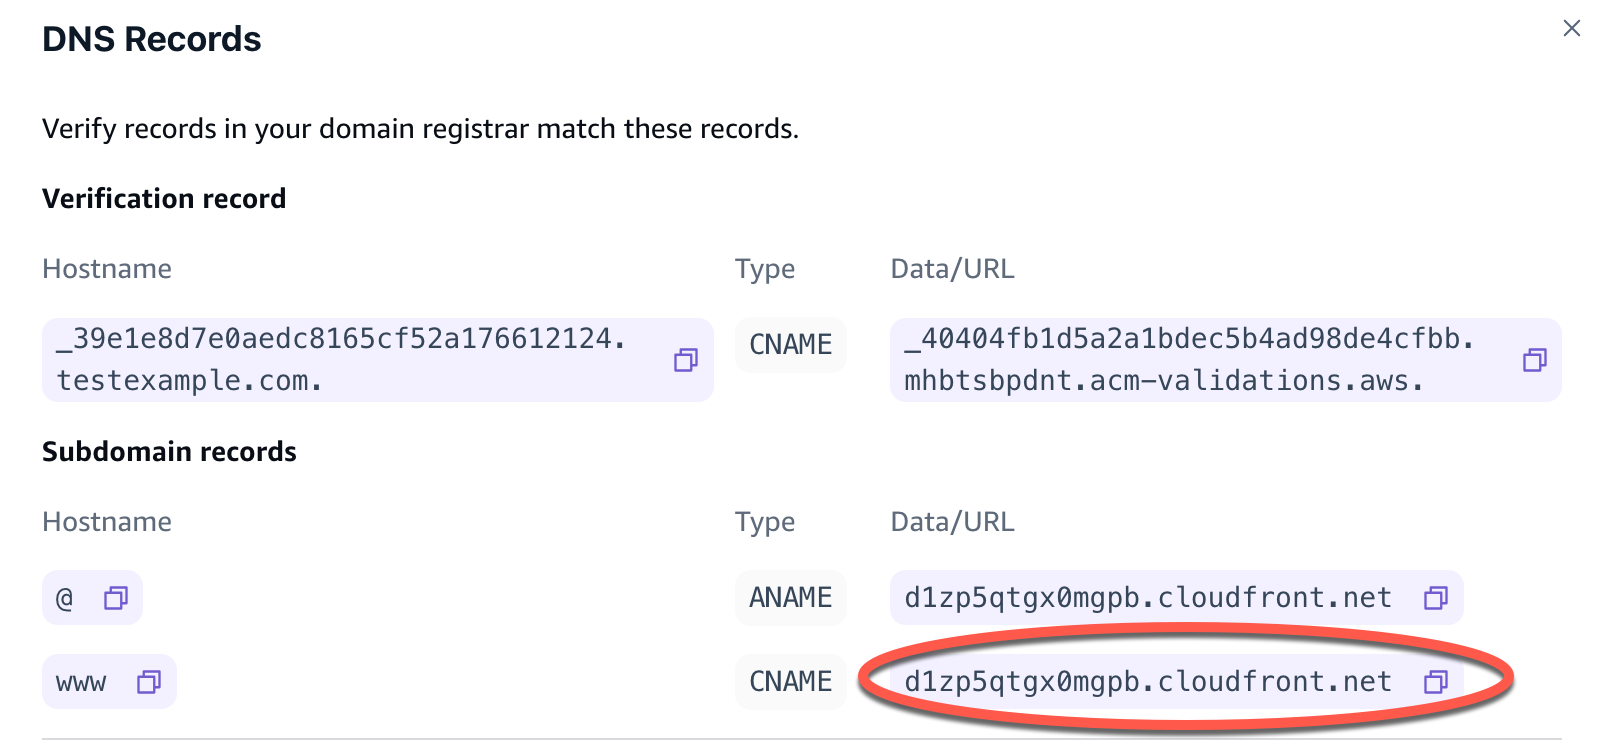 ドメイン名レコードが丸で囲まれた Amplify コンソールの DNS レコードのスクリーンショット。